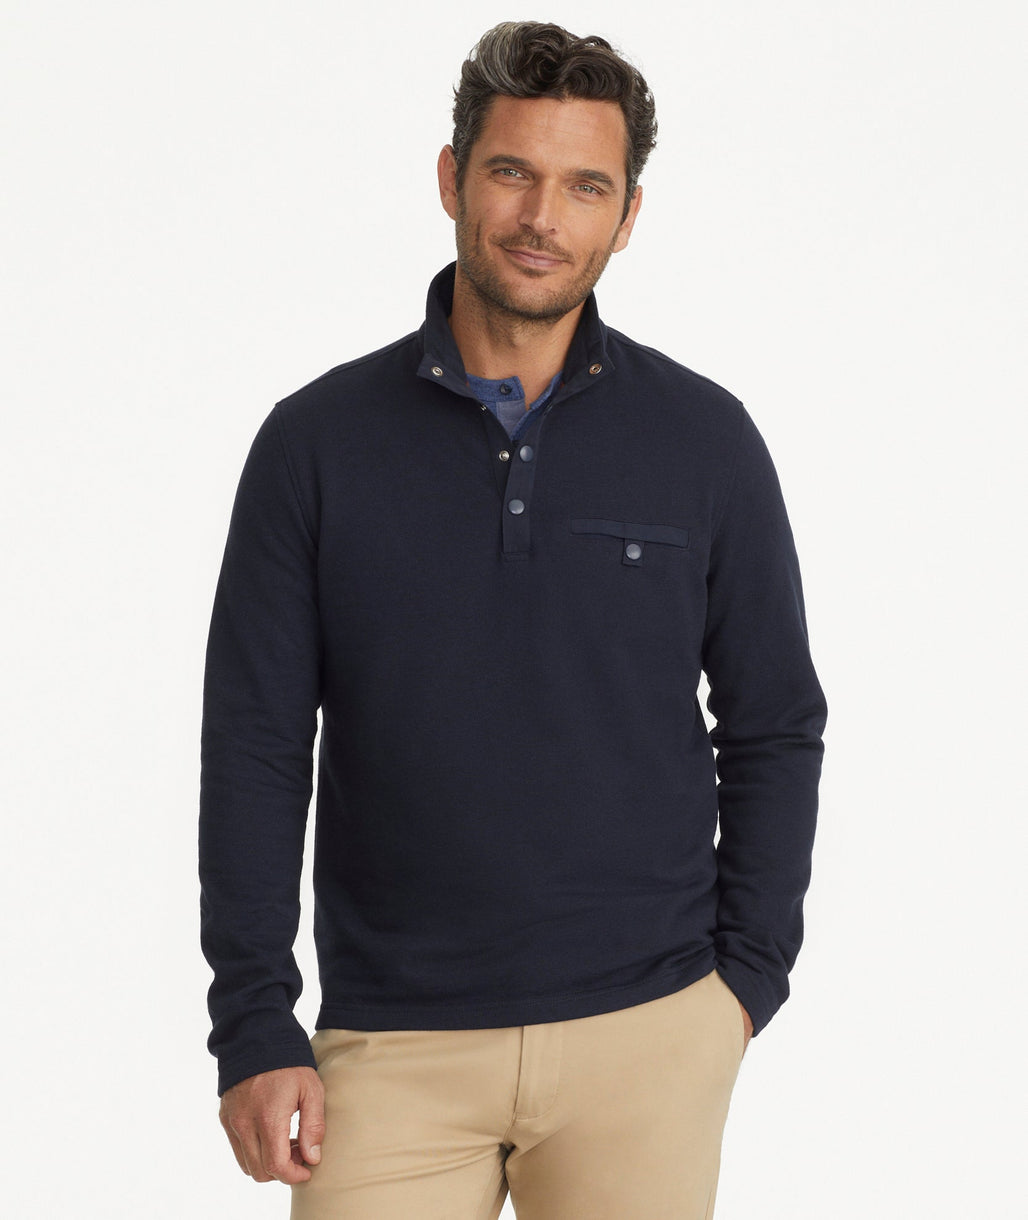 Model is wearing UNTUCKit Parkson quarter-zip sweatshirt in navy.